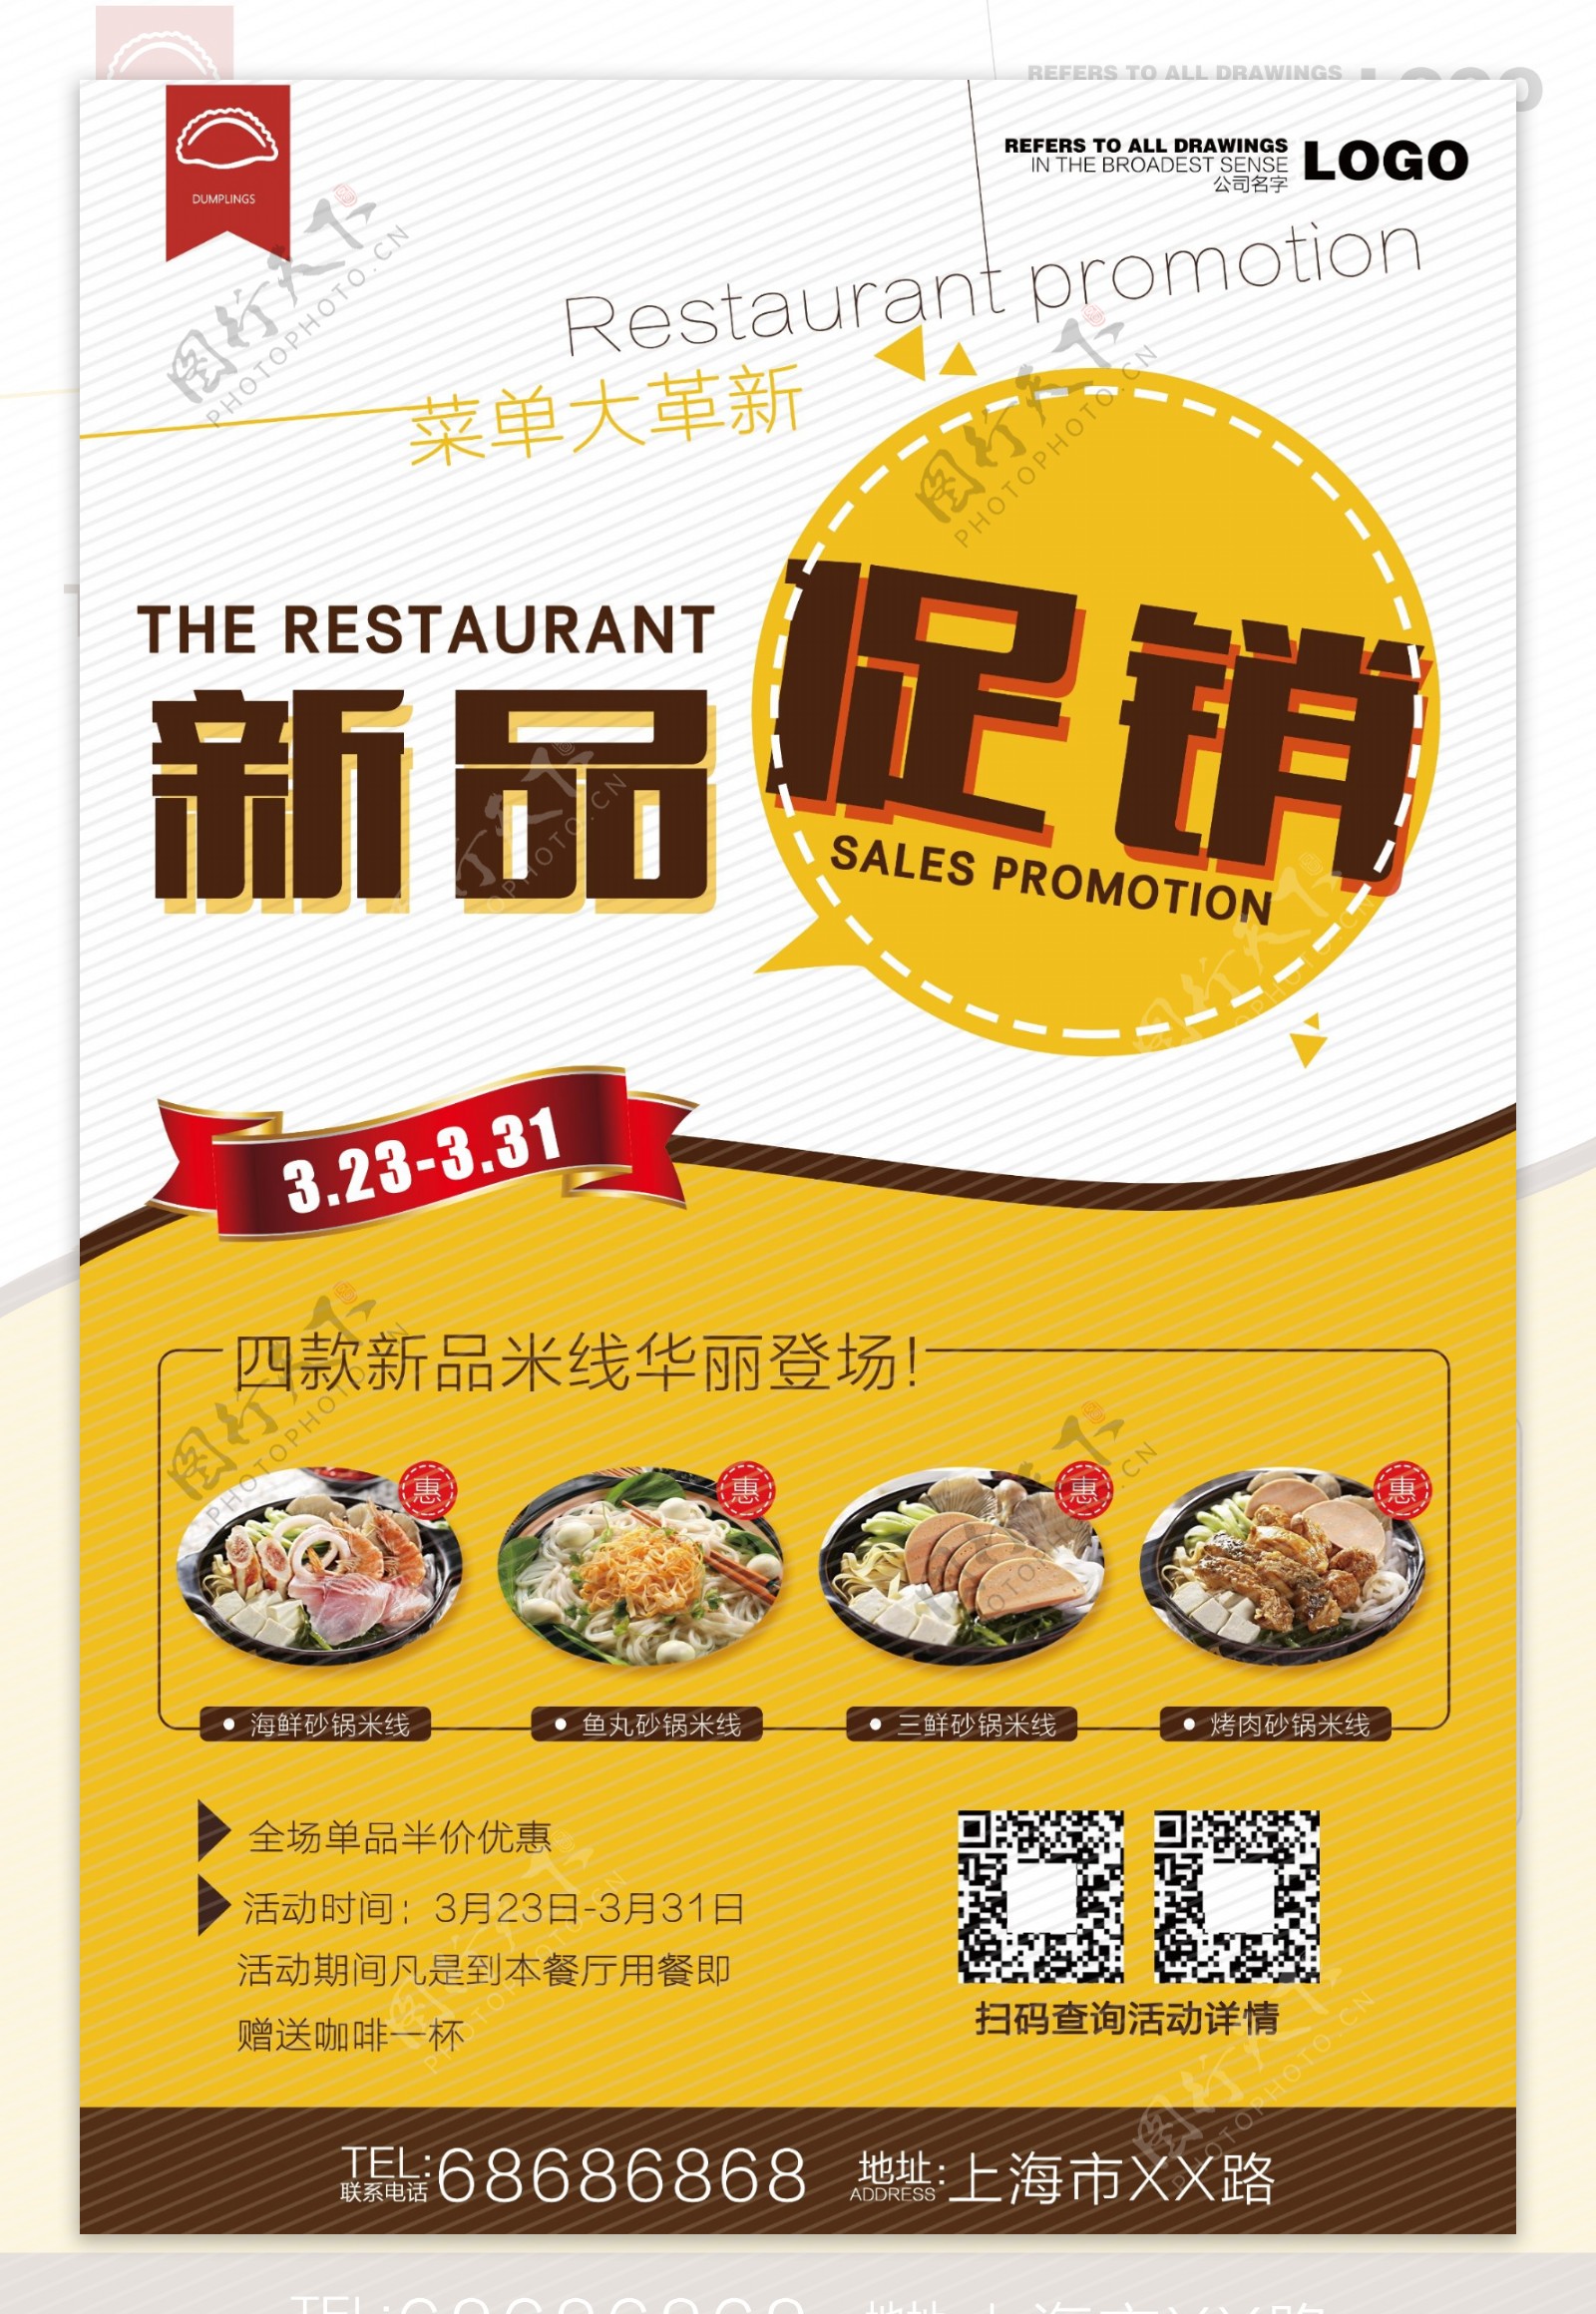 餐厅新品促销宣传海报设计